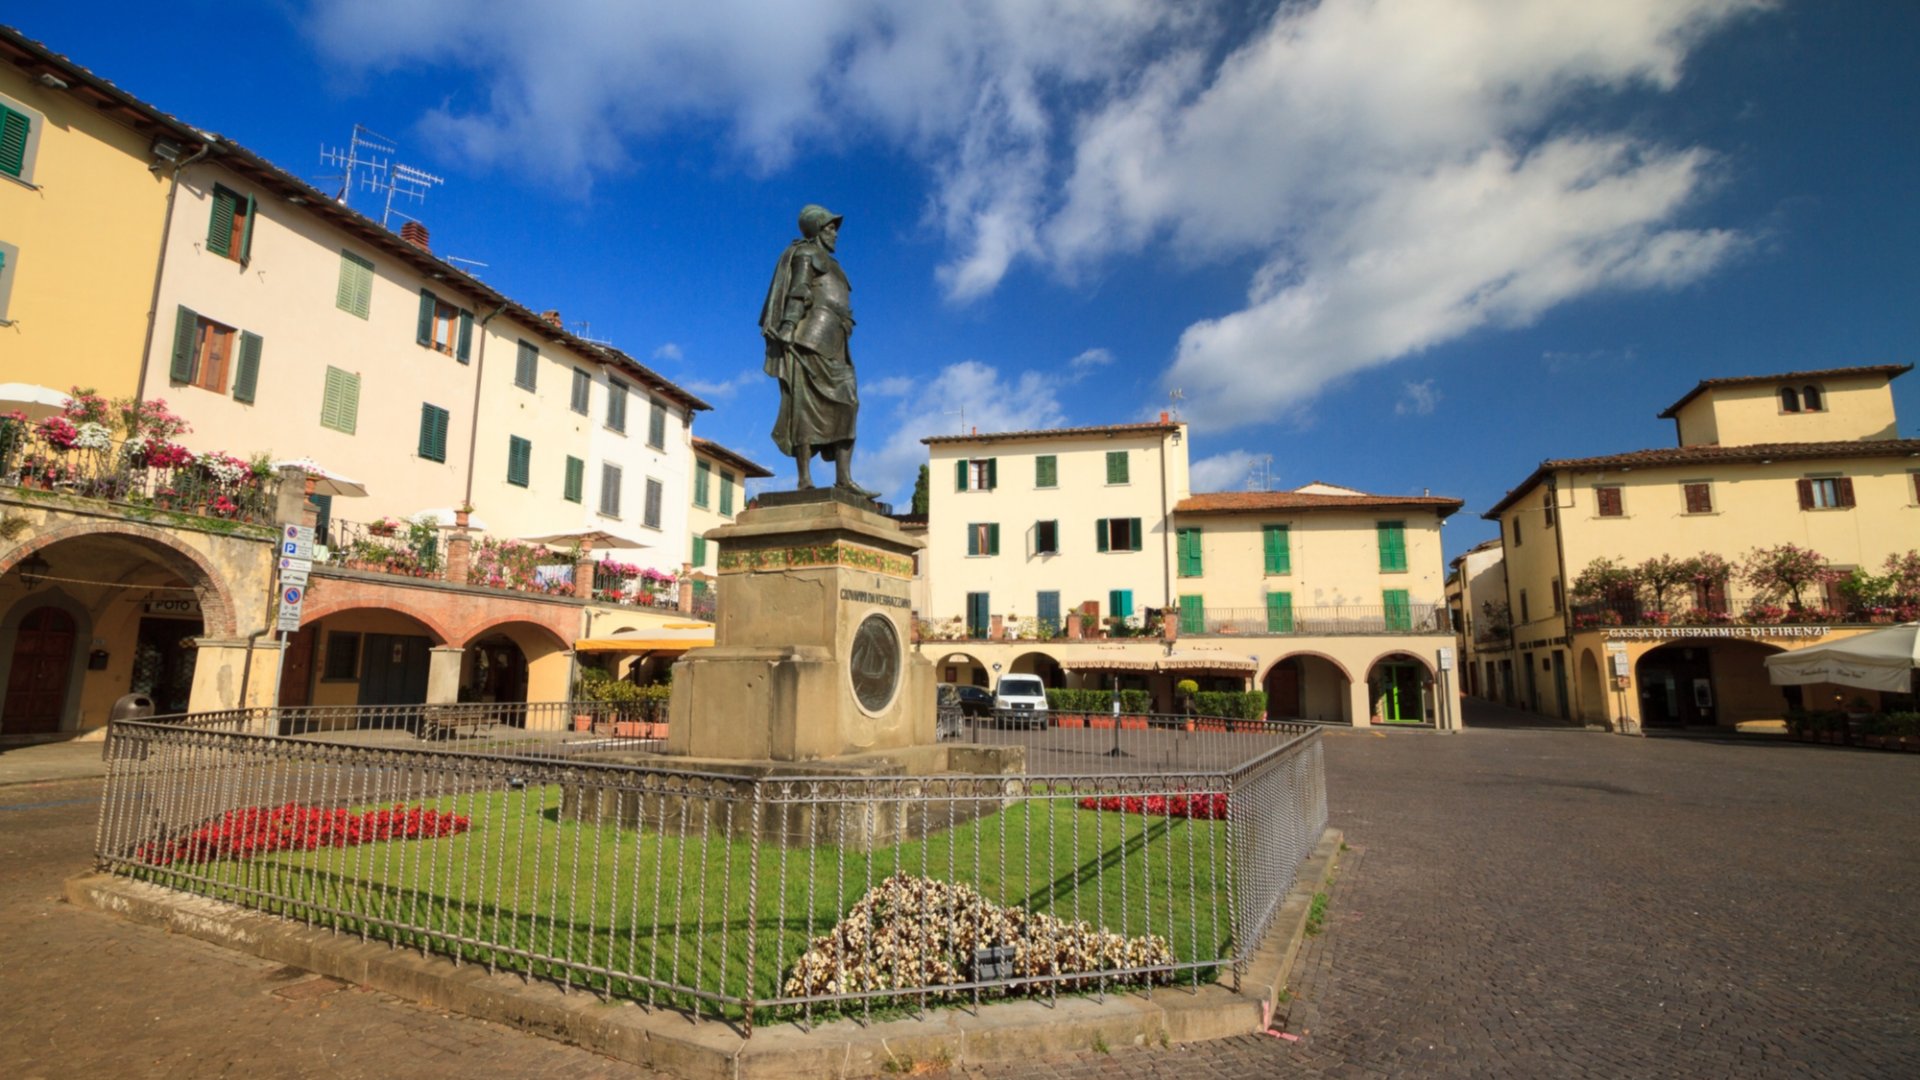 La grande place de Greve, entourée de portiques et avec la statue dédiée à Giovanni da Verrazzano au centre.